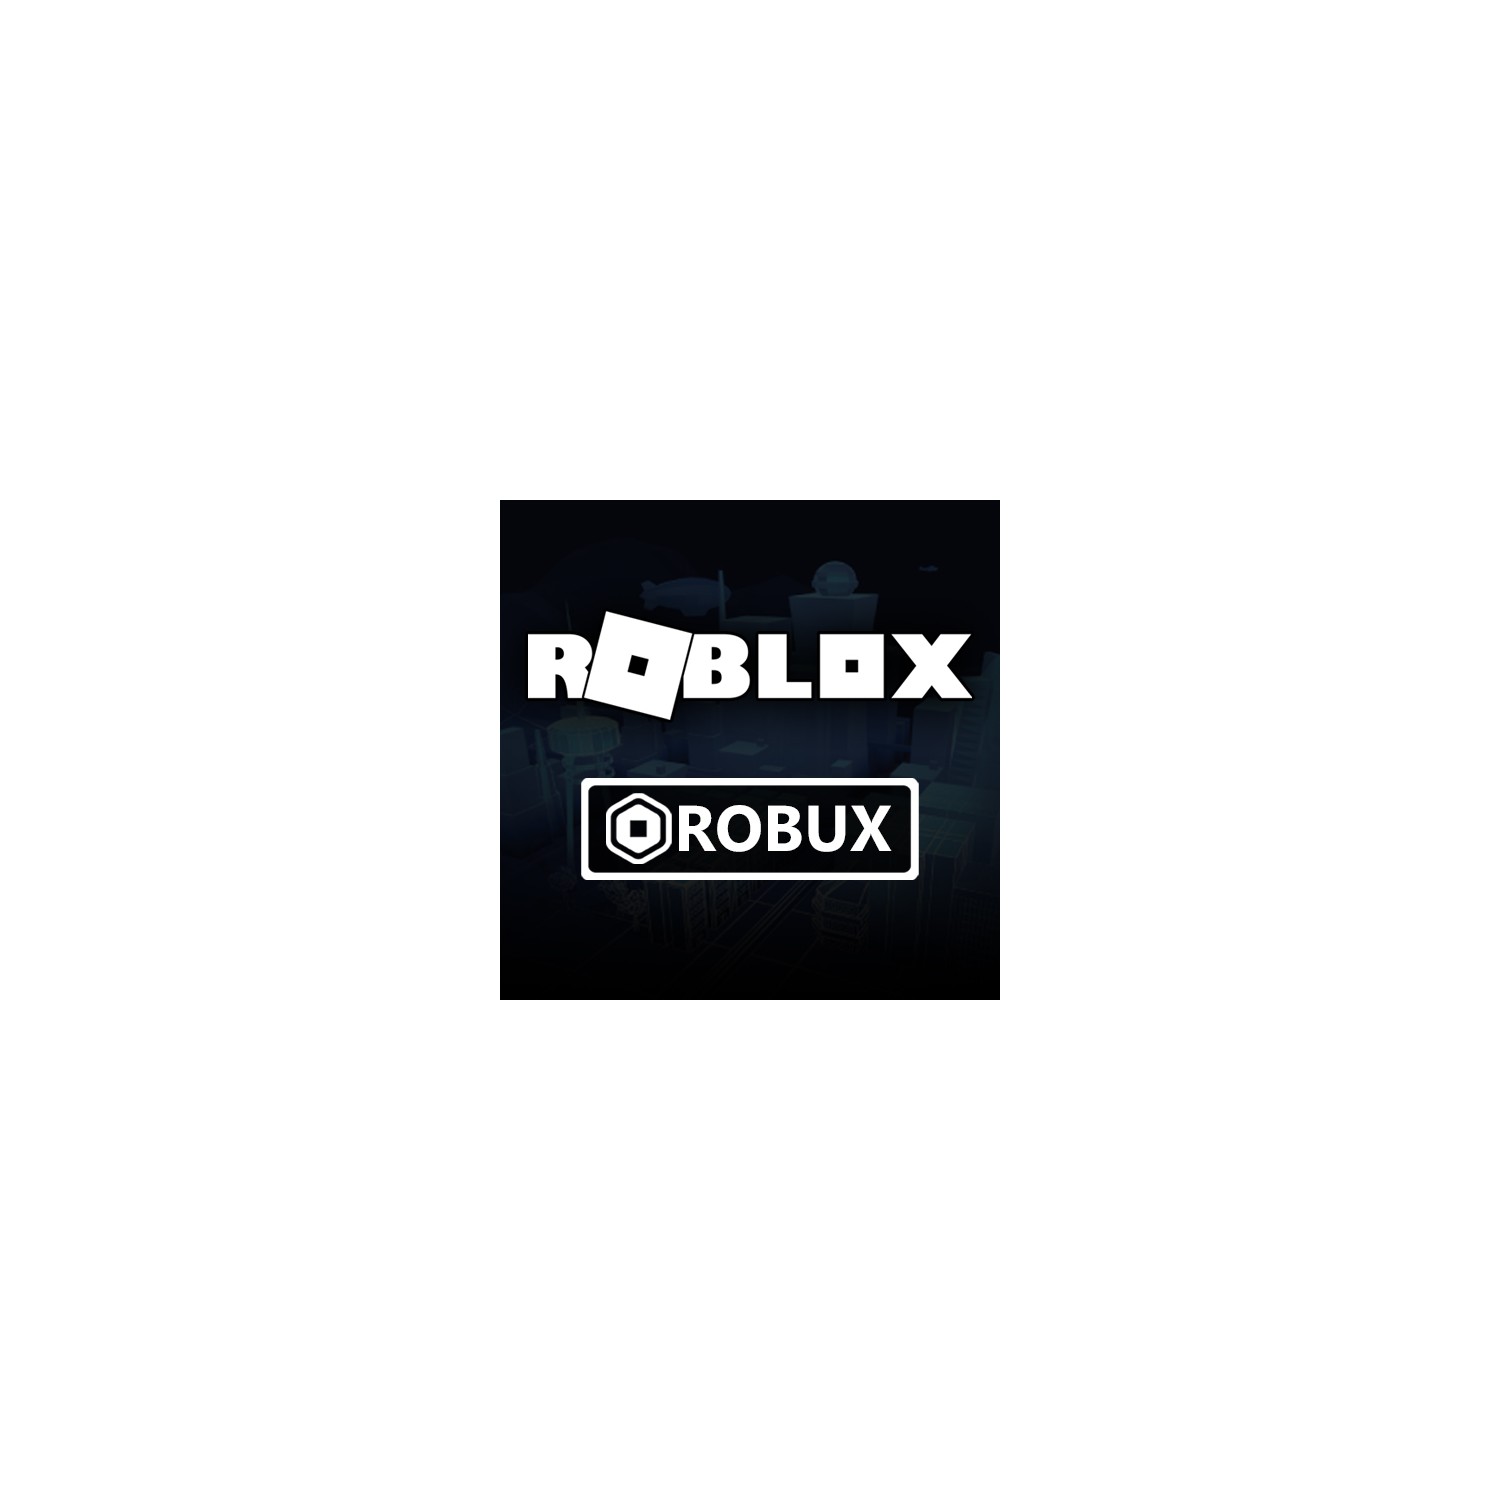 Roblox 2000 Robux Yorumlari - adamlara robux verdik